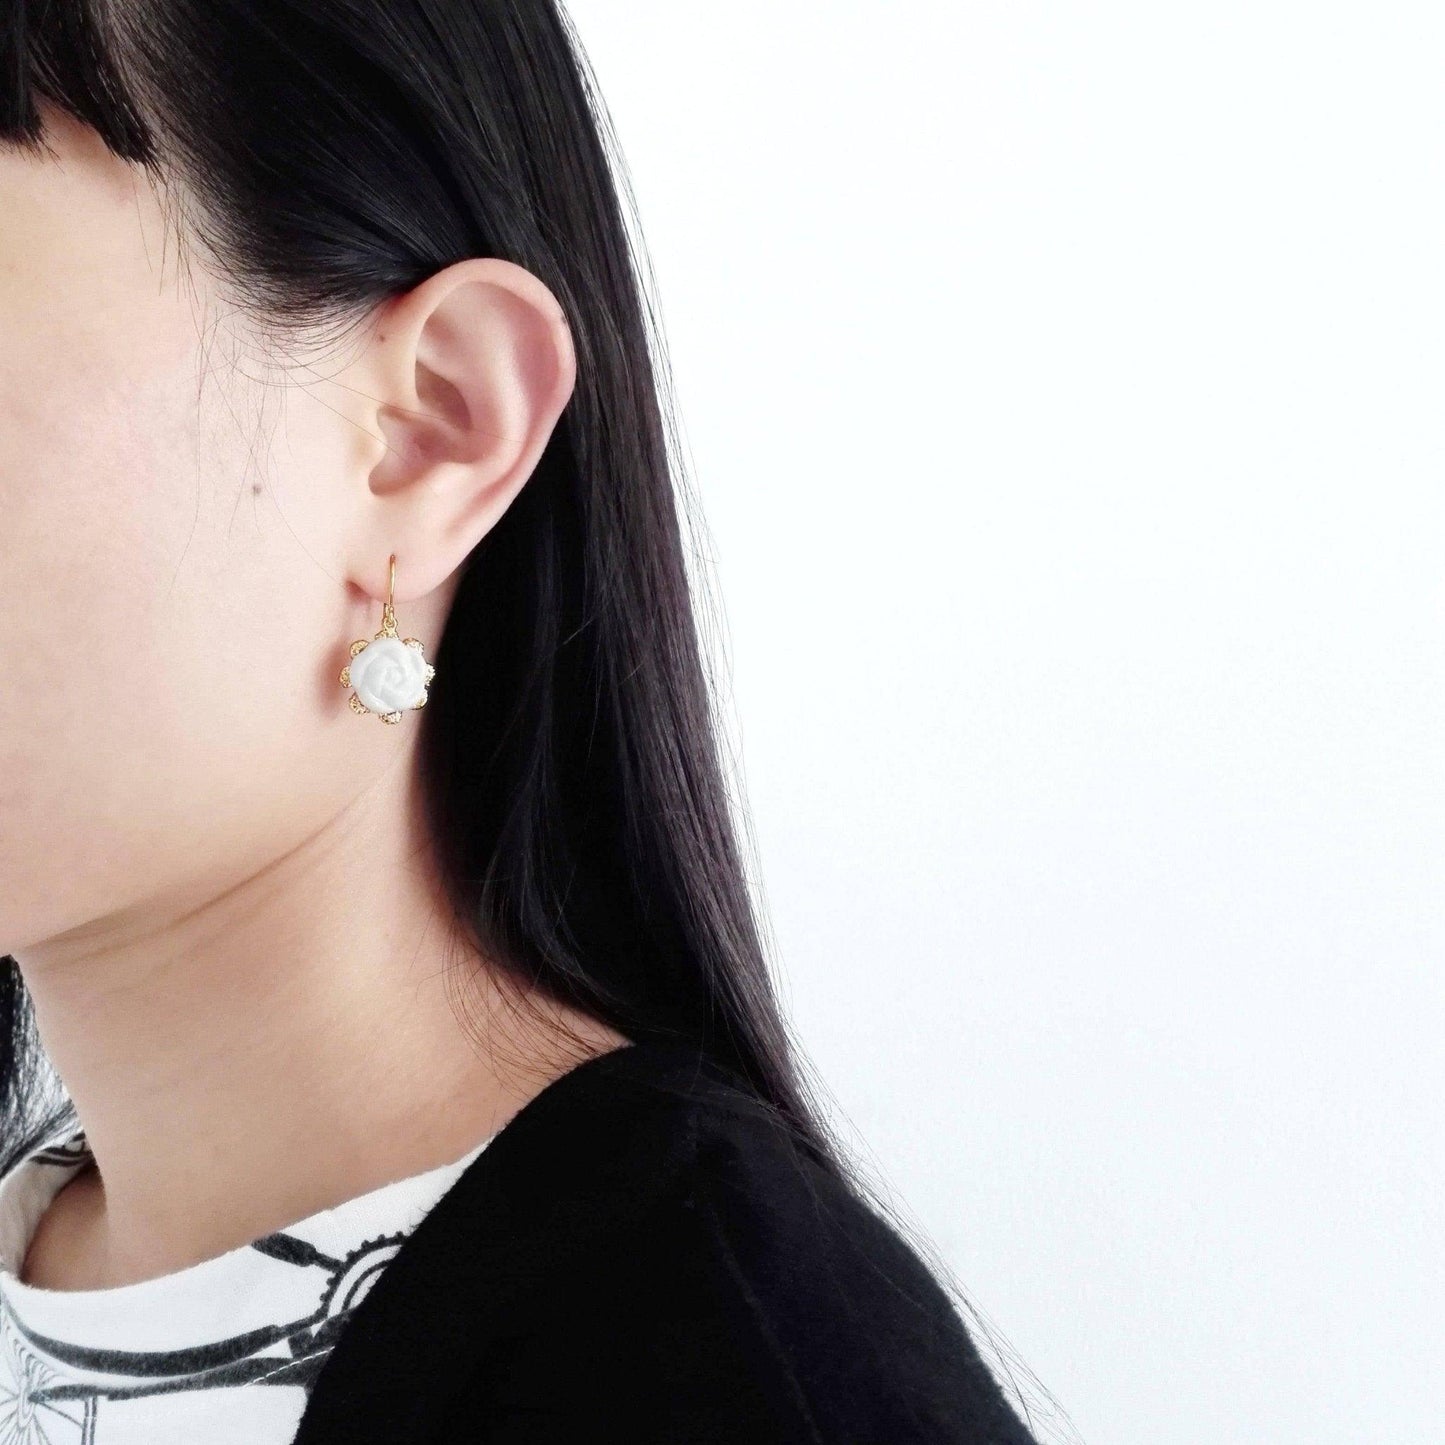 Everyday Porcelain Camellia Flower Charm Earrings | POPORCELAIN Based in Denmark